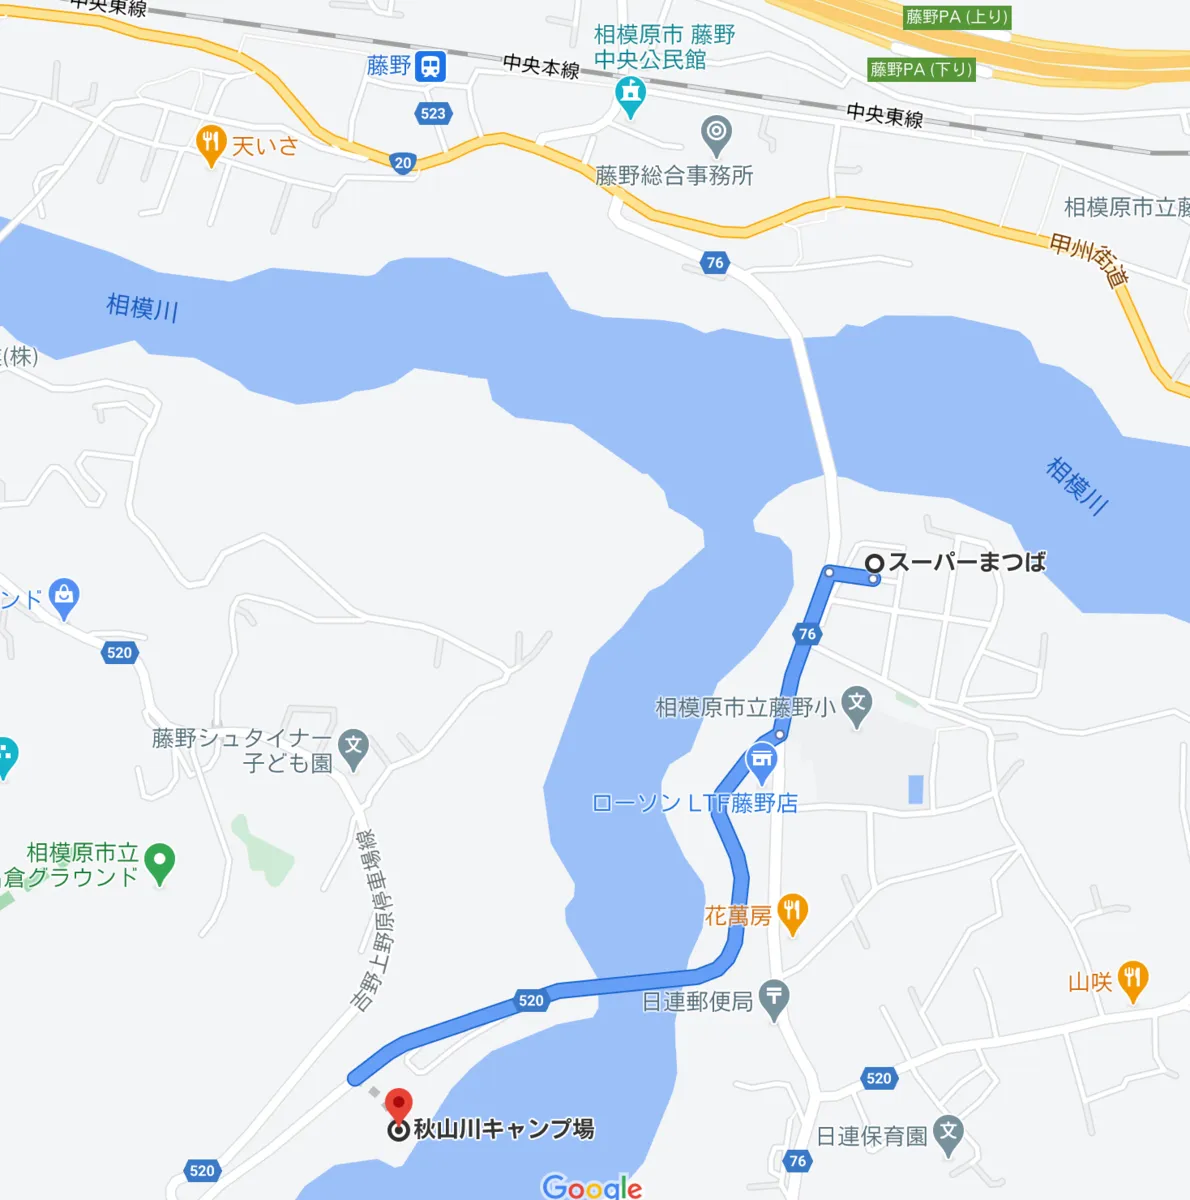 แผนที่และเส้นทางจากมัตสึบะไปยังจุดตั้งแคมป์อากิยามะกาวะ